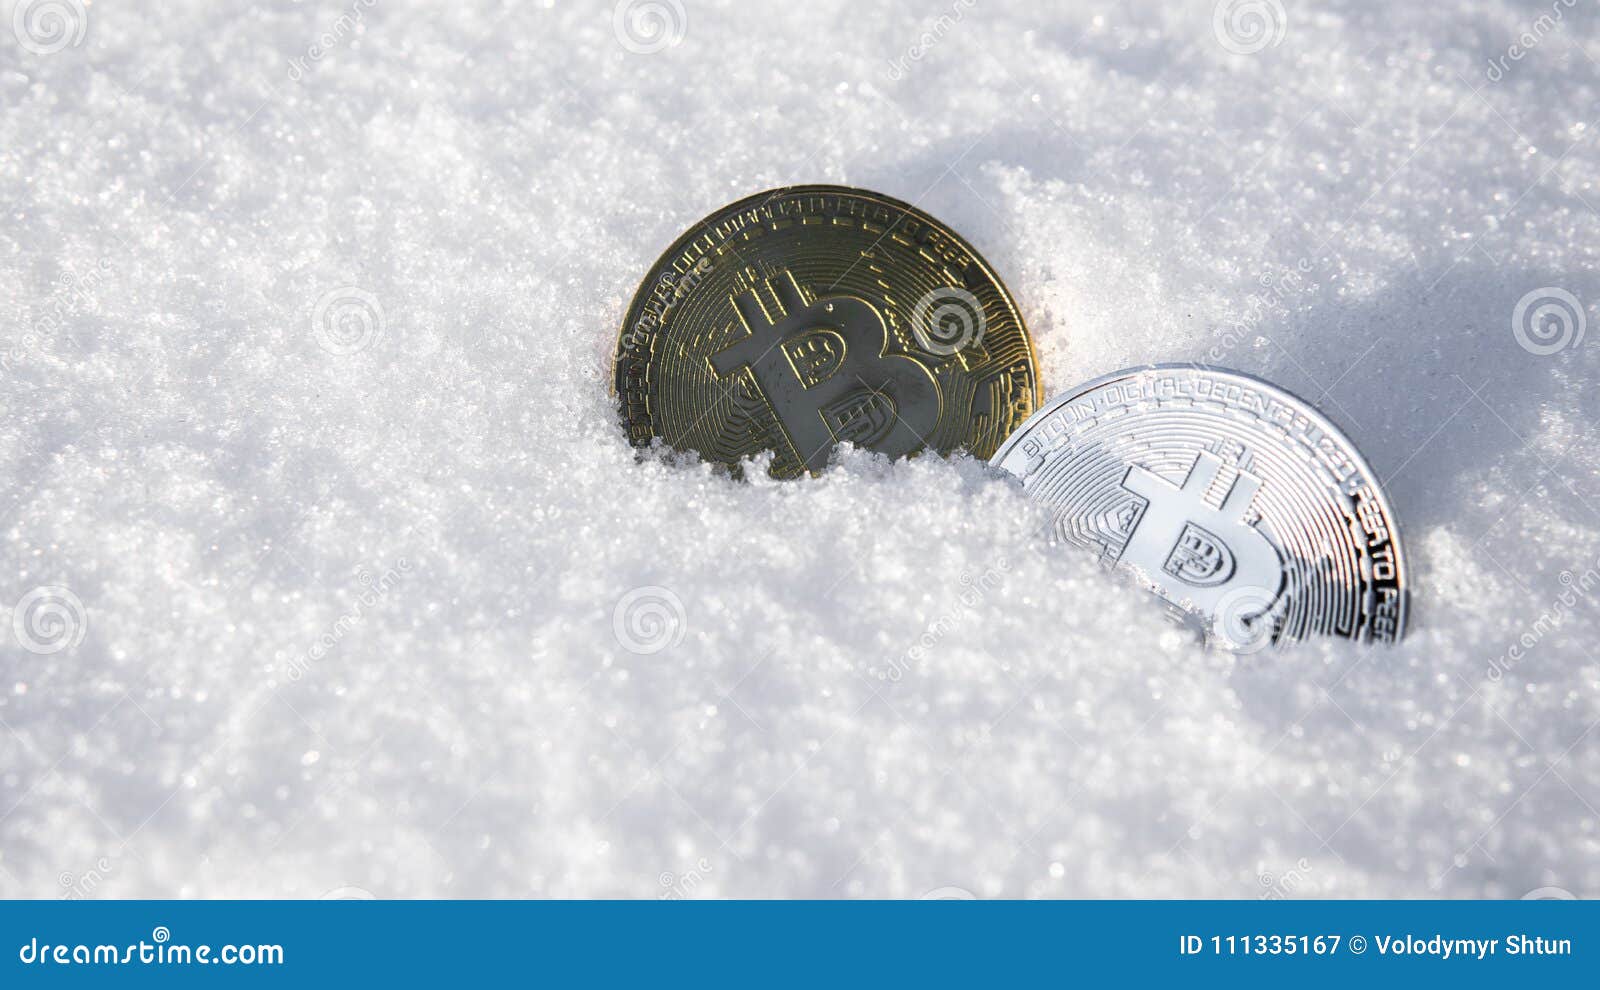 bitcoin trading frozen)